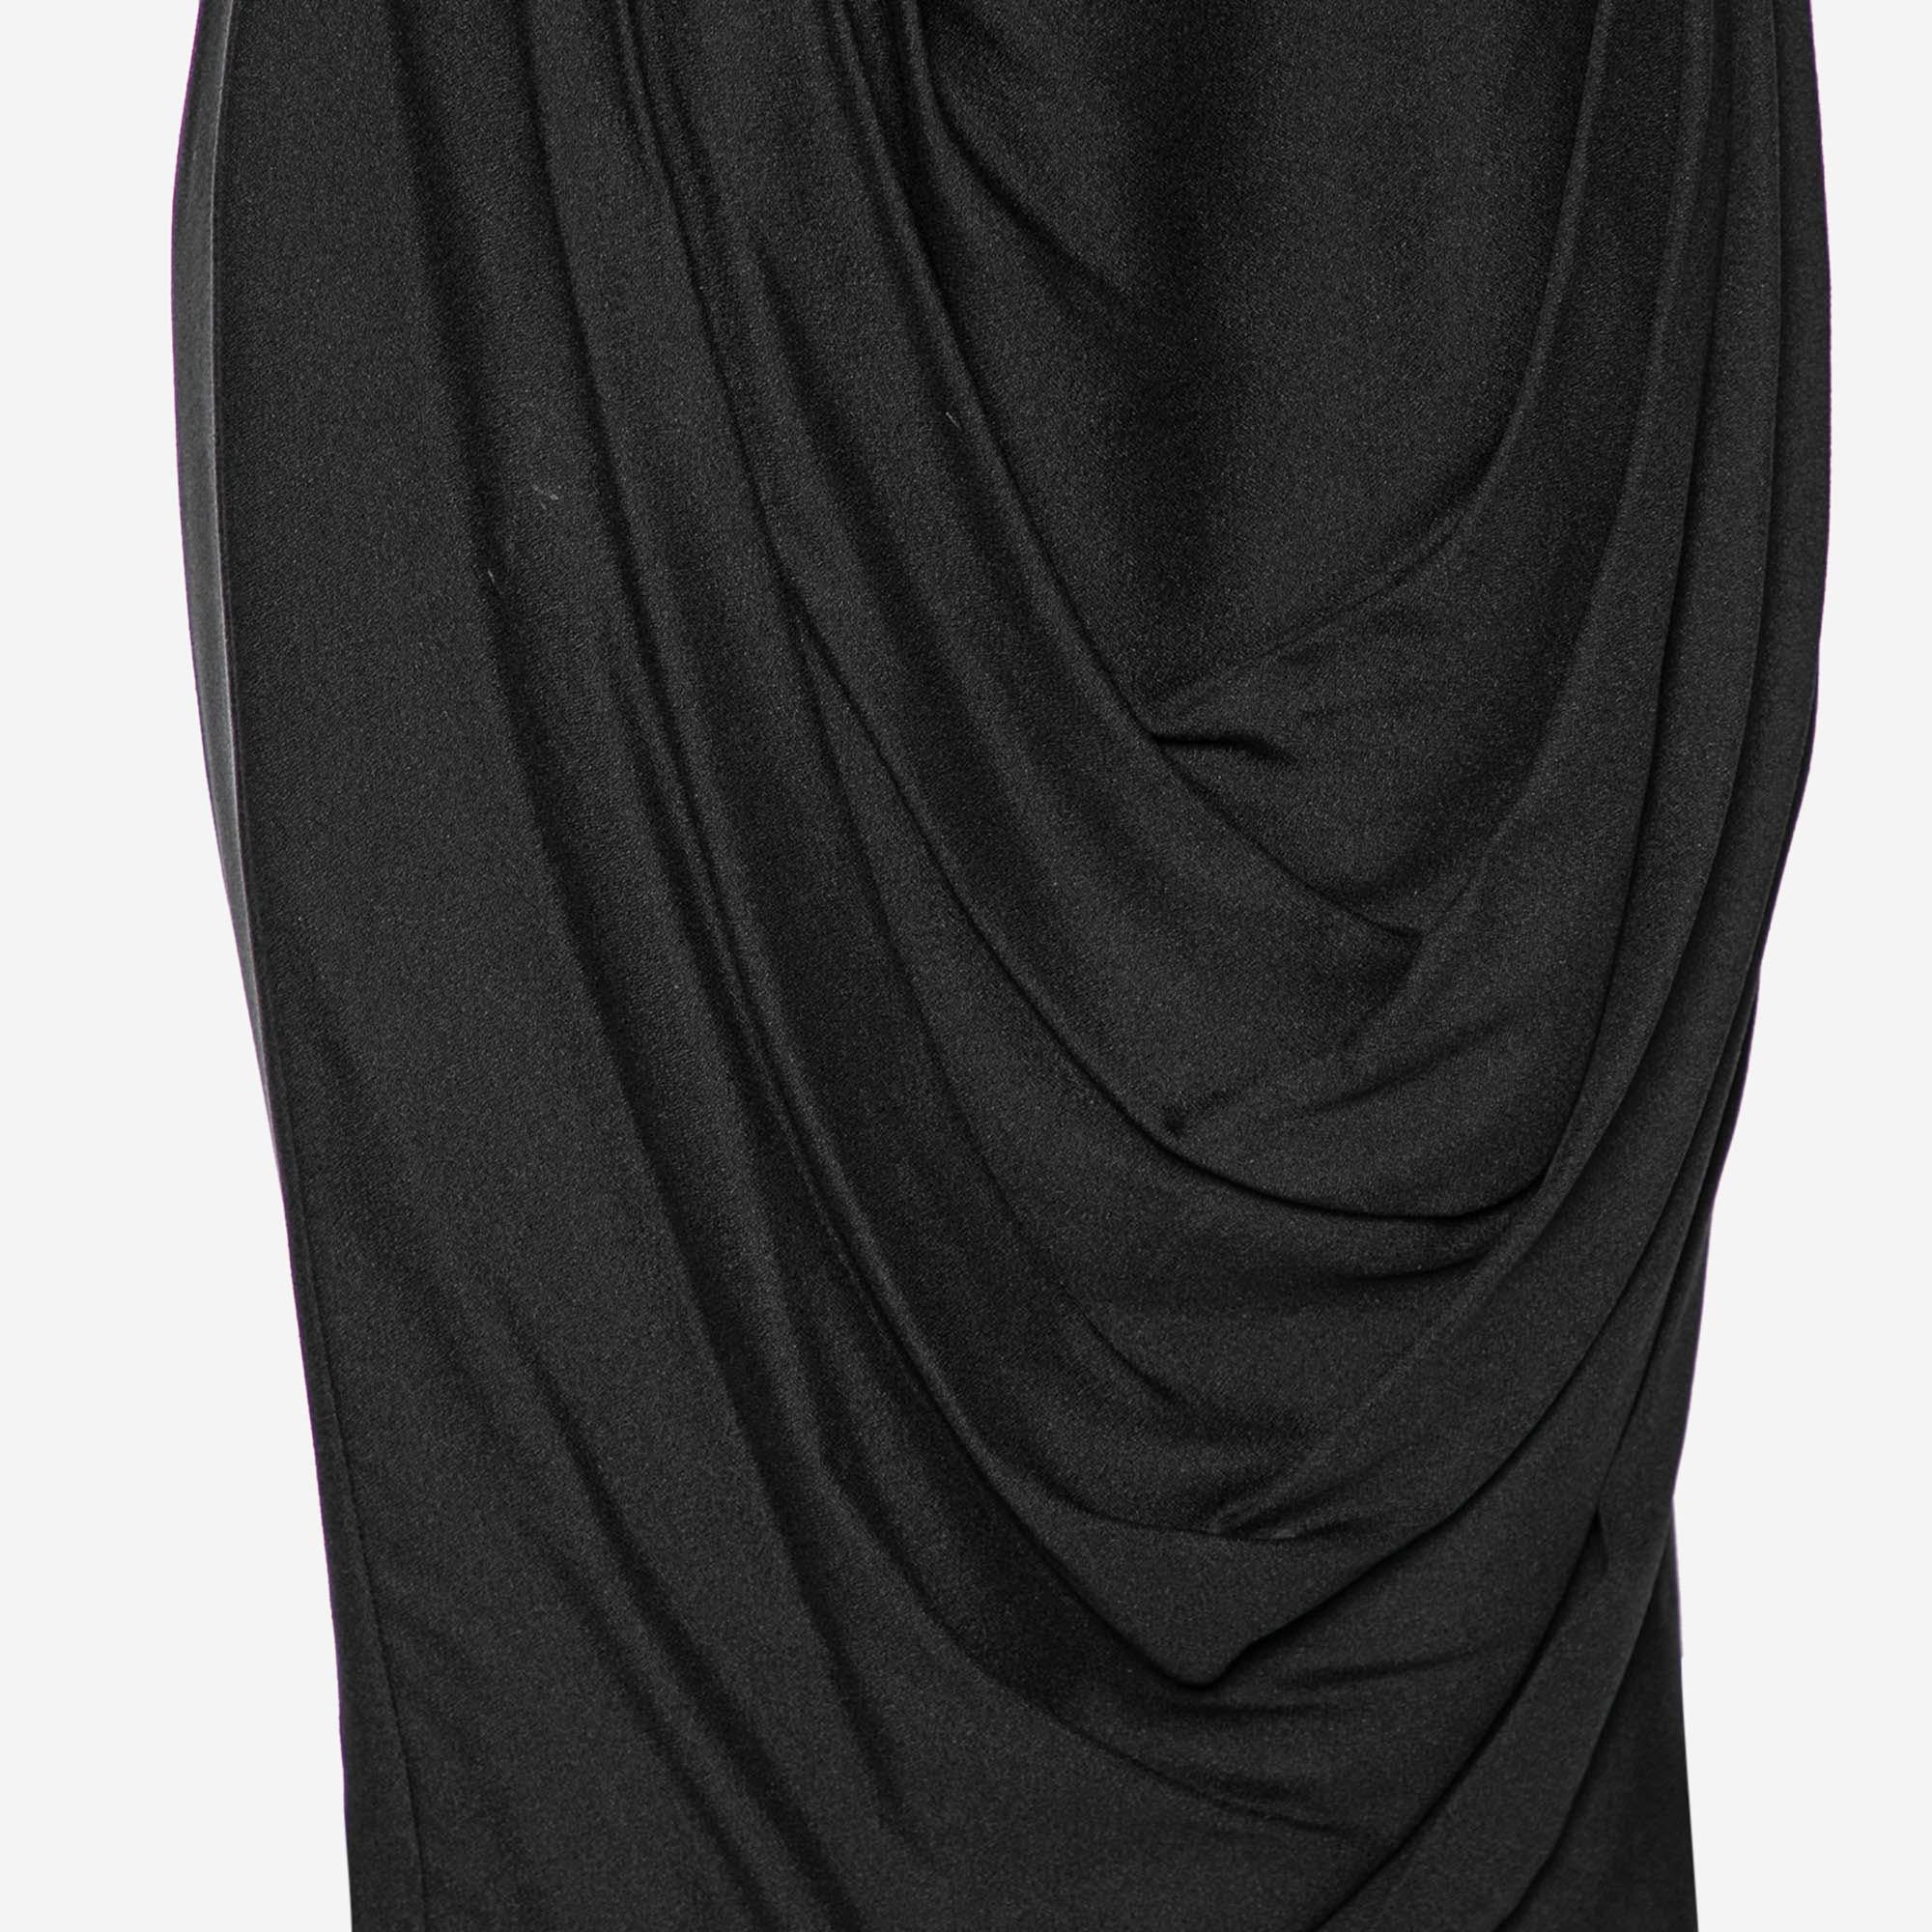 Chanel Black Silk Crepe Draped Skirt M In Good Condition For Sale In Dubai, Al Qouz 2